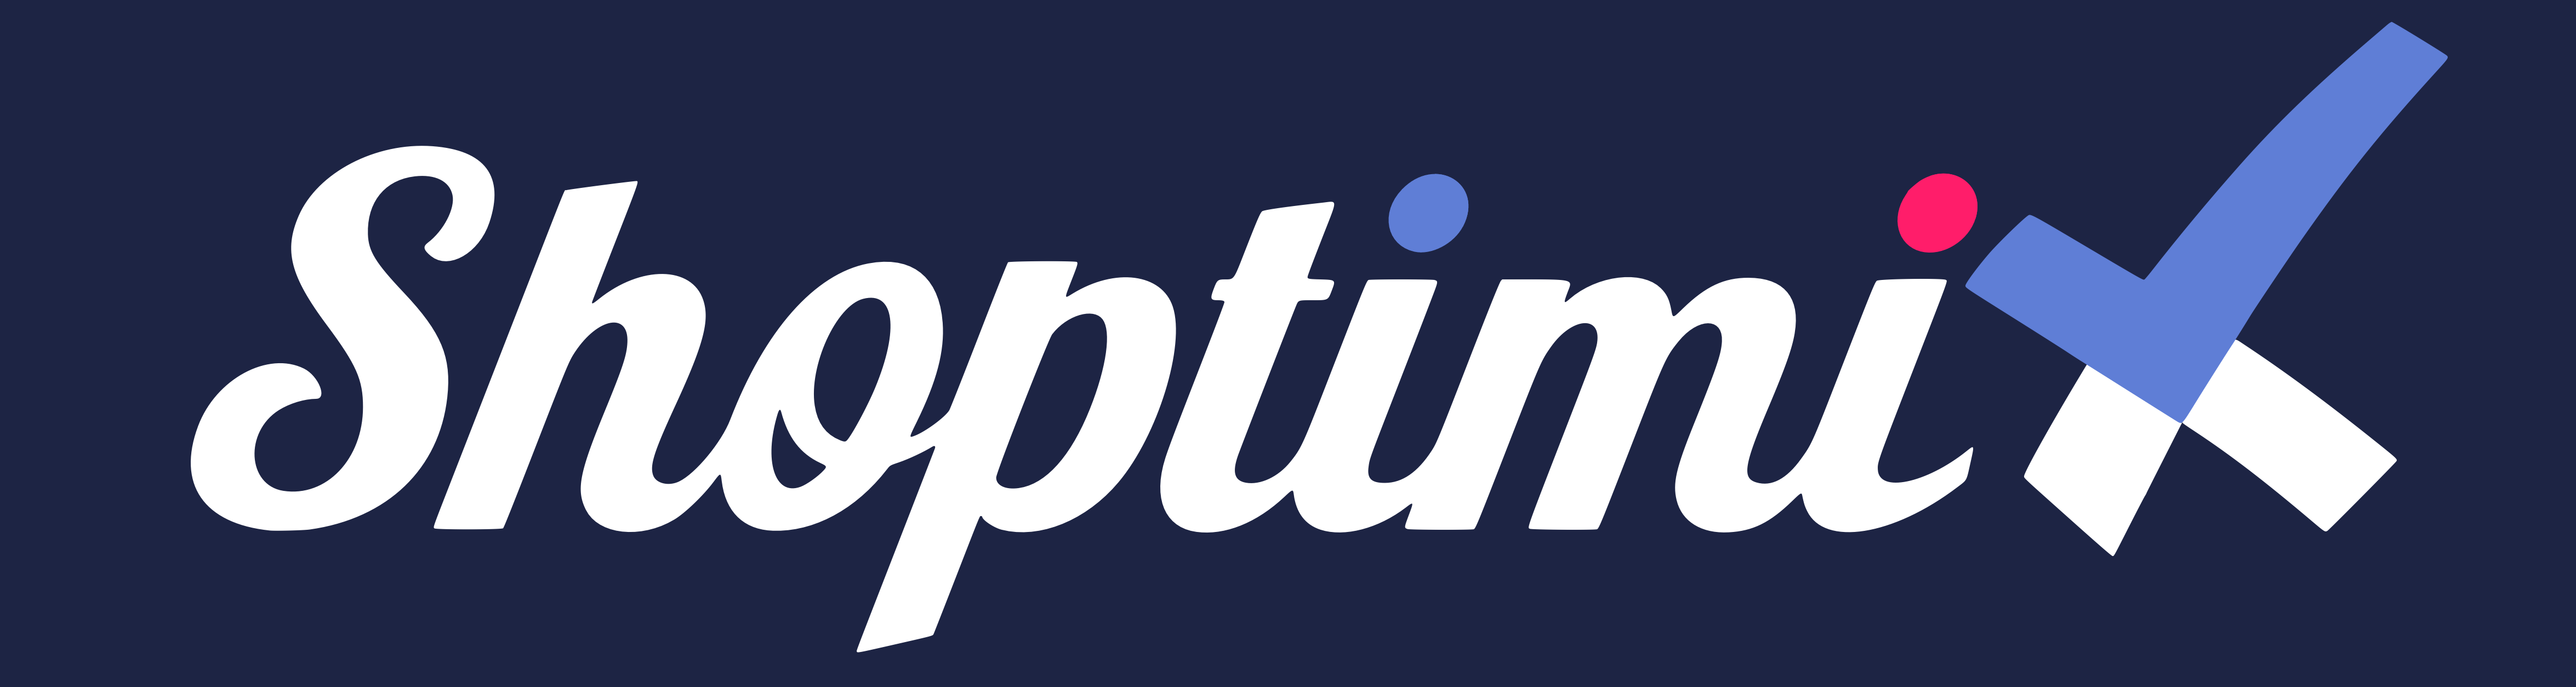 White and Dark Blue Company Logo - Company Logo - Press - Shoptimix